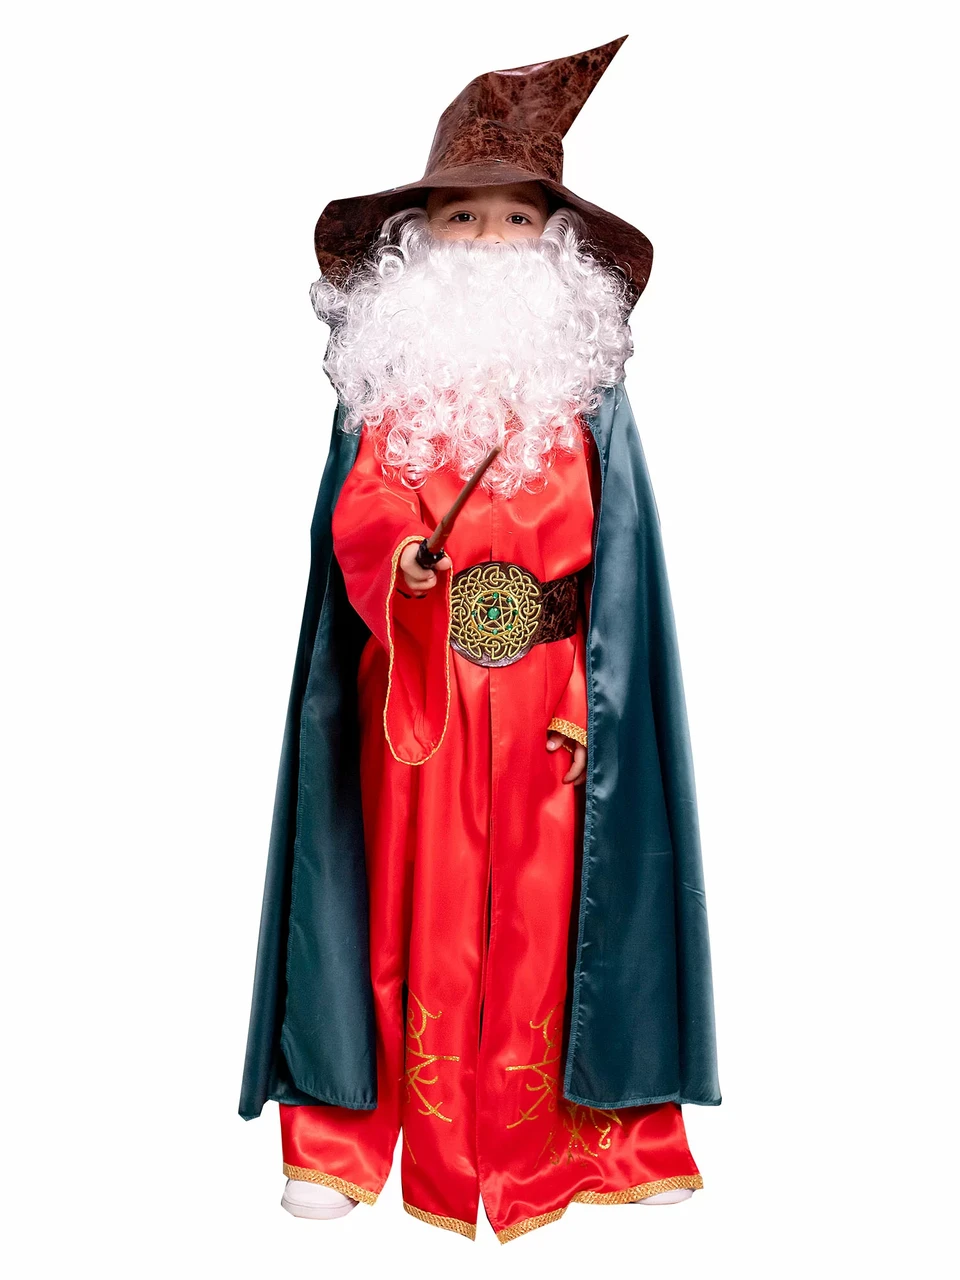 Детский карнавальный костюм Маг-чародей Пуговка